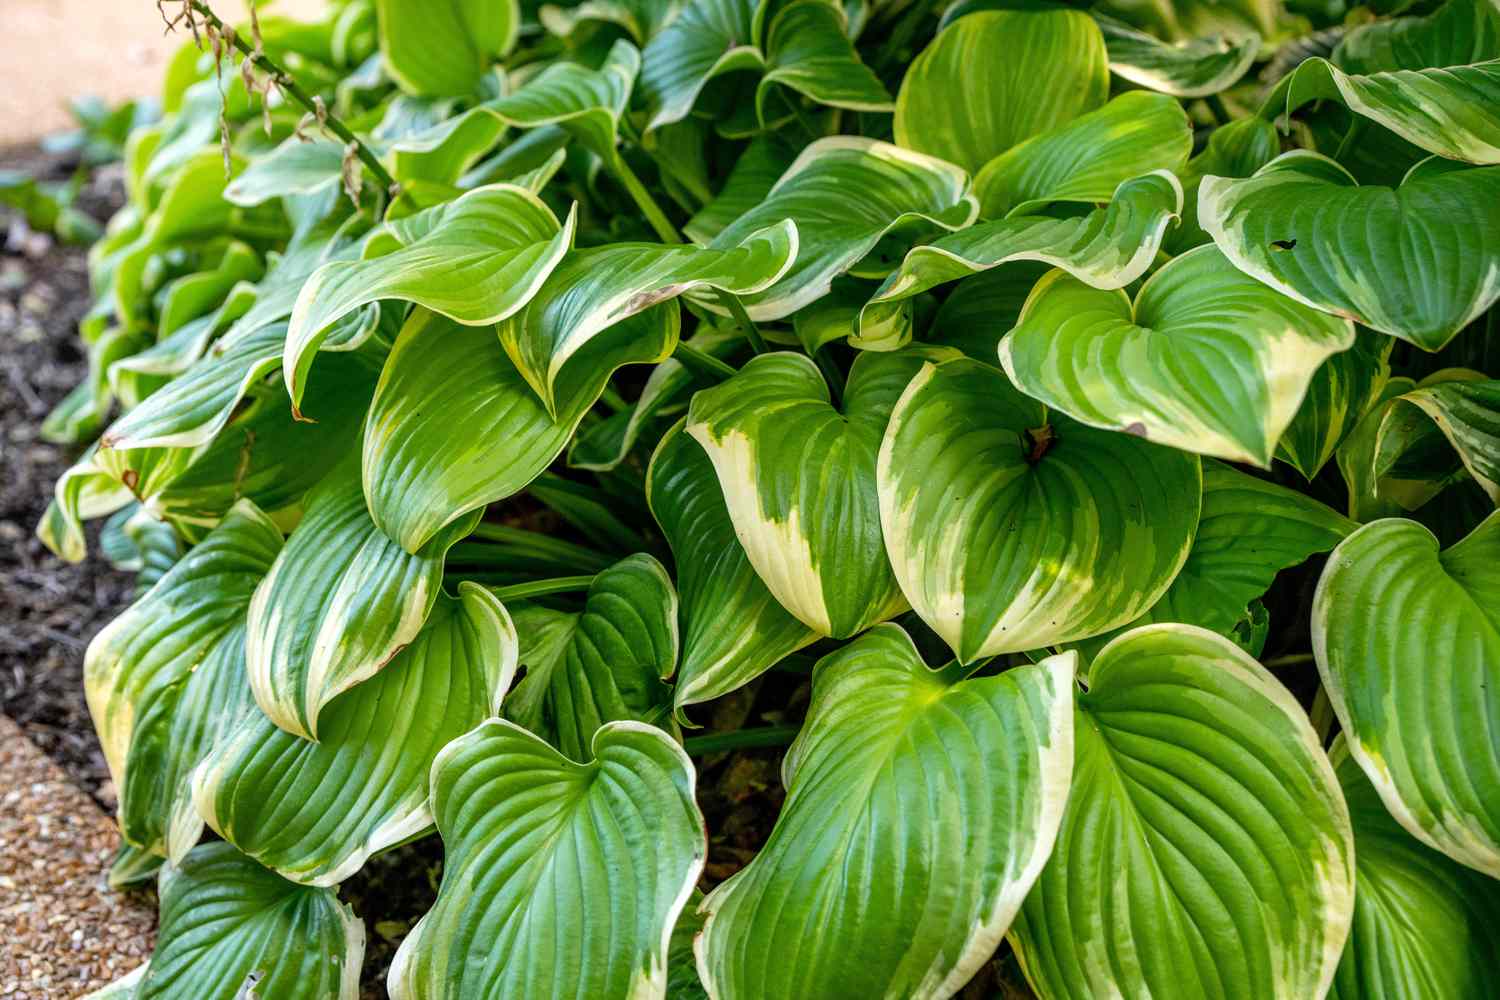 Planta Hosta con grandes hojas acanaladas verdes y blancas apiladas unas sobre otras